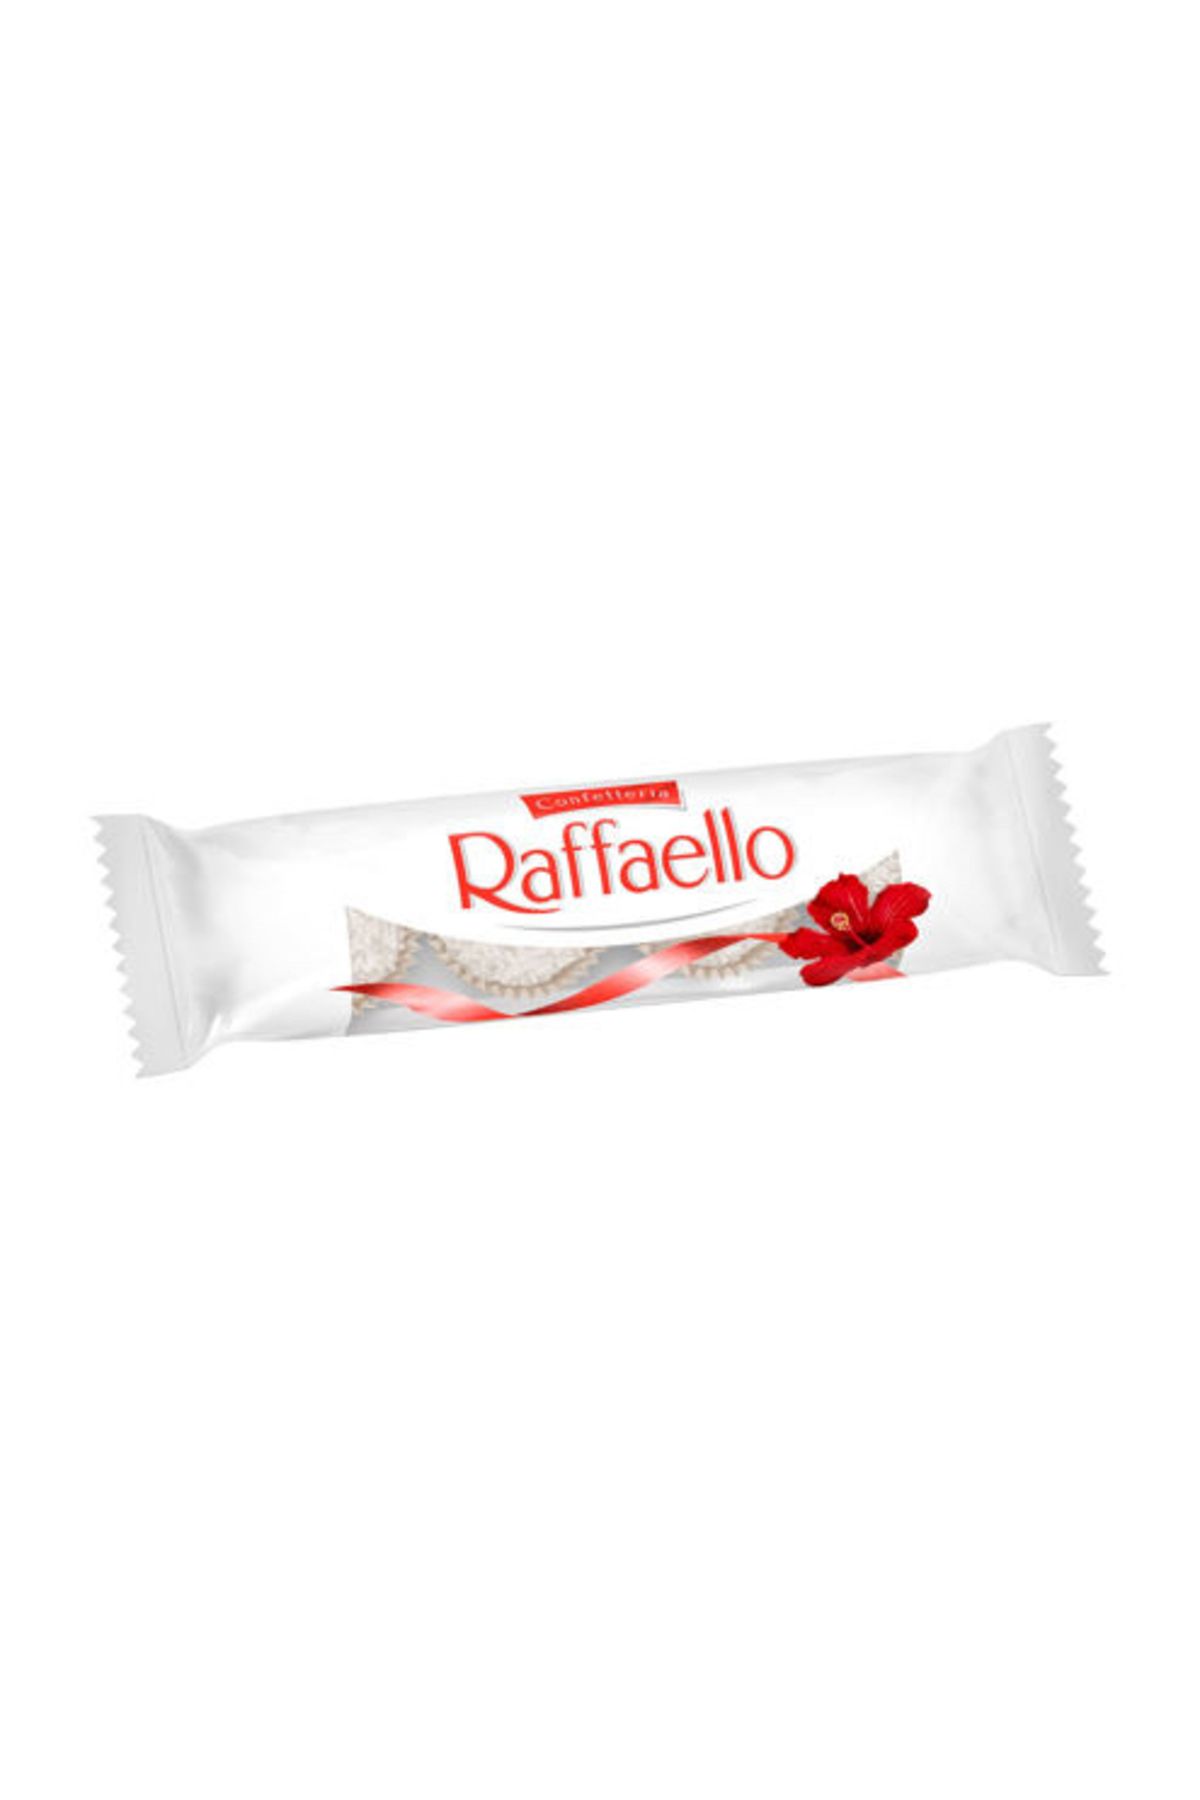 Raffaello Ferrero Hindistan Cevizli Çikolata 4 l